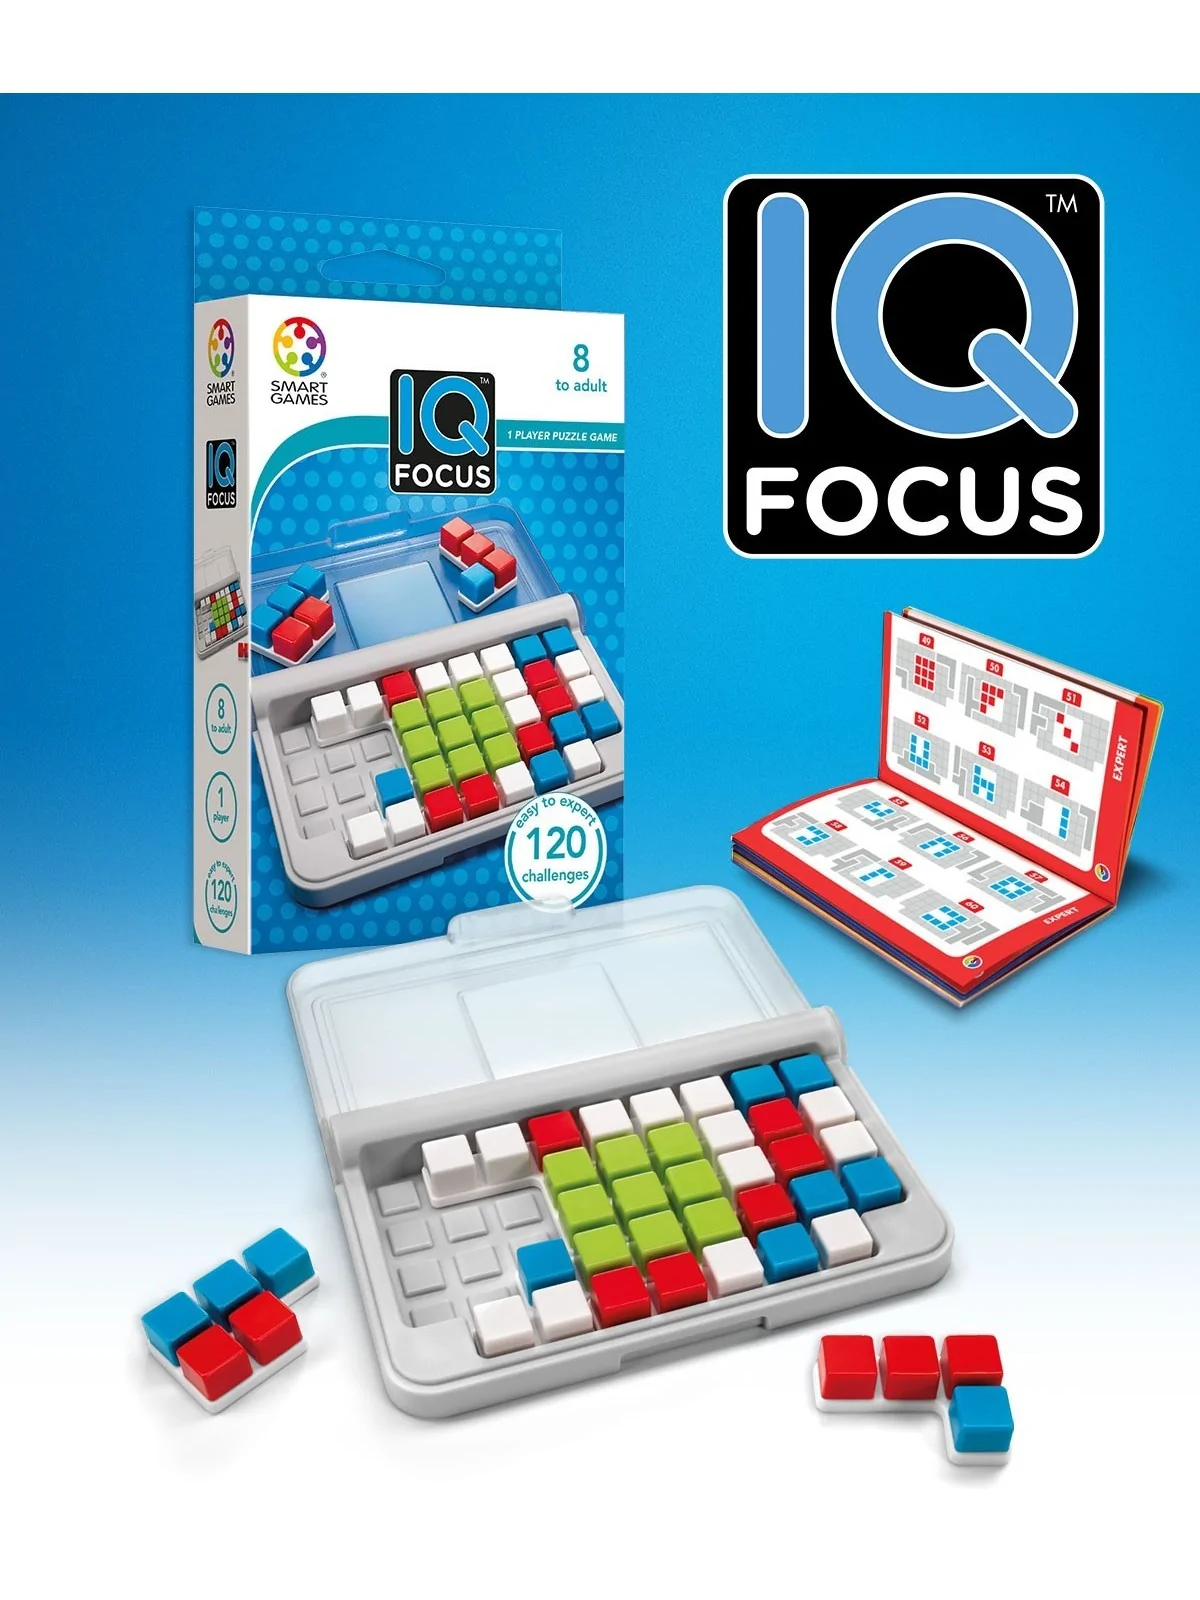 Comprar IQ Focus barato al mejor precio 11,65 € de Ludilo